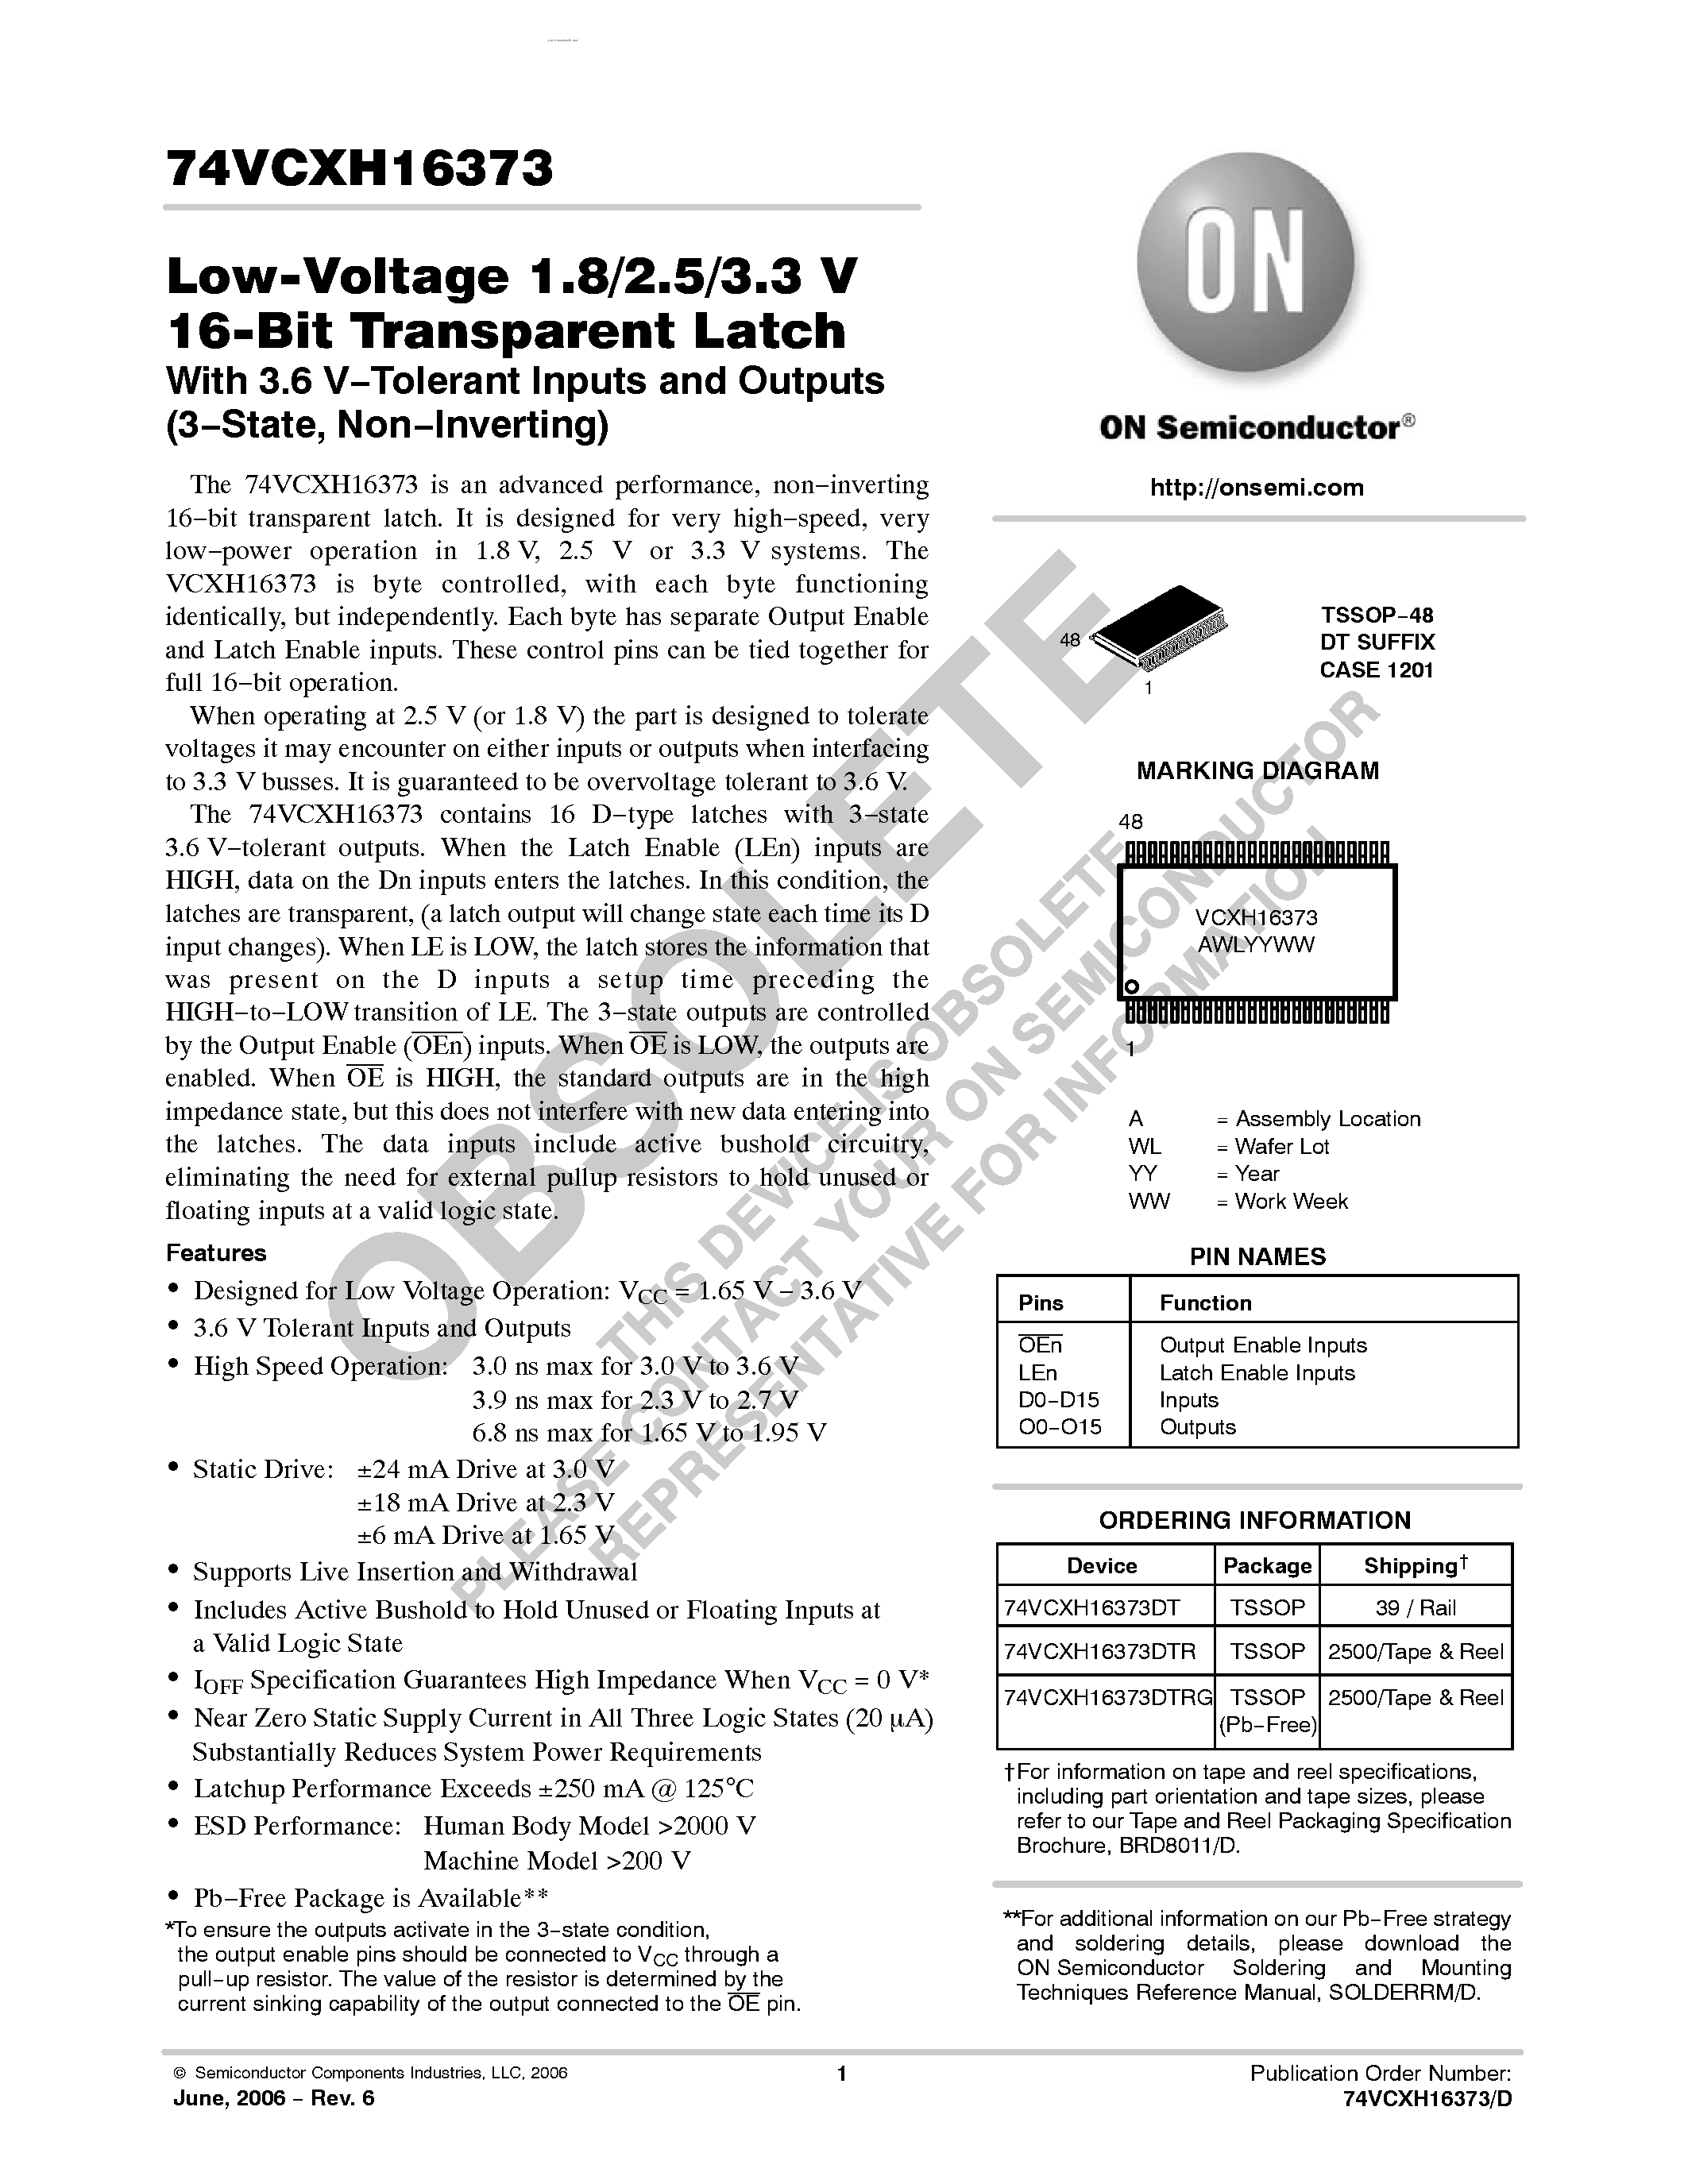 Даташит 74VCXH16373 - Low-Voltage 1.8/2.5/3.3 V 16-Bit Transparent Latch страница 1